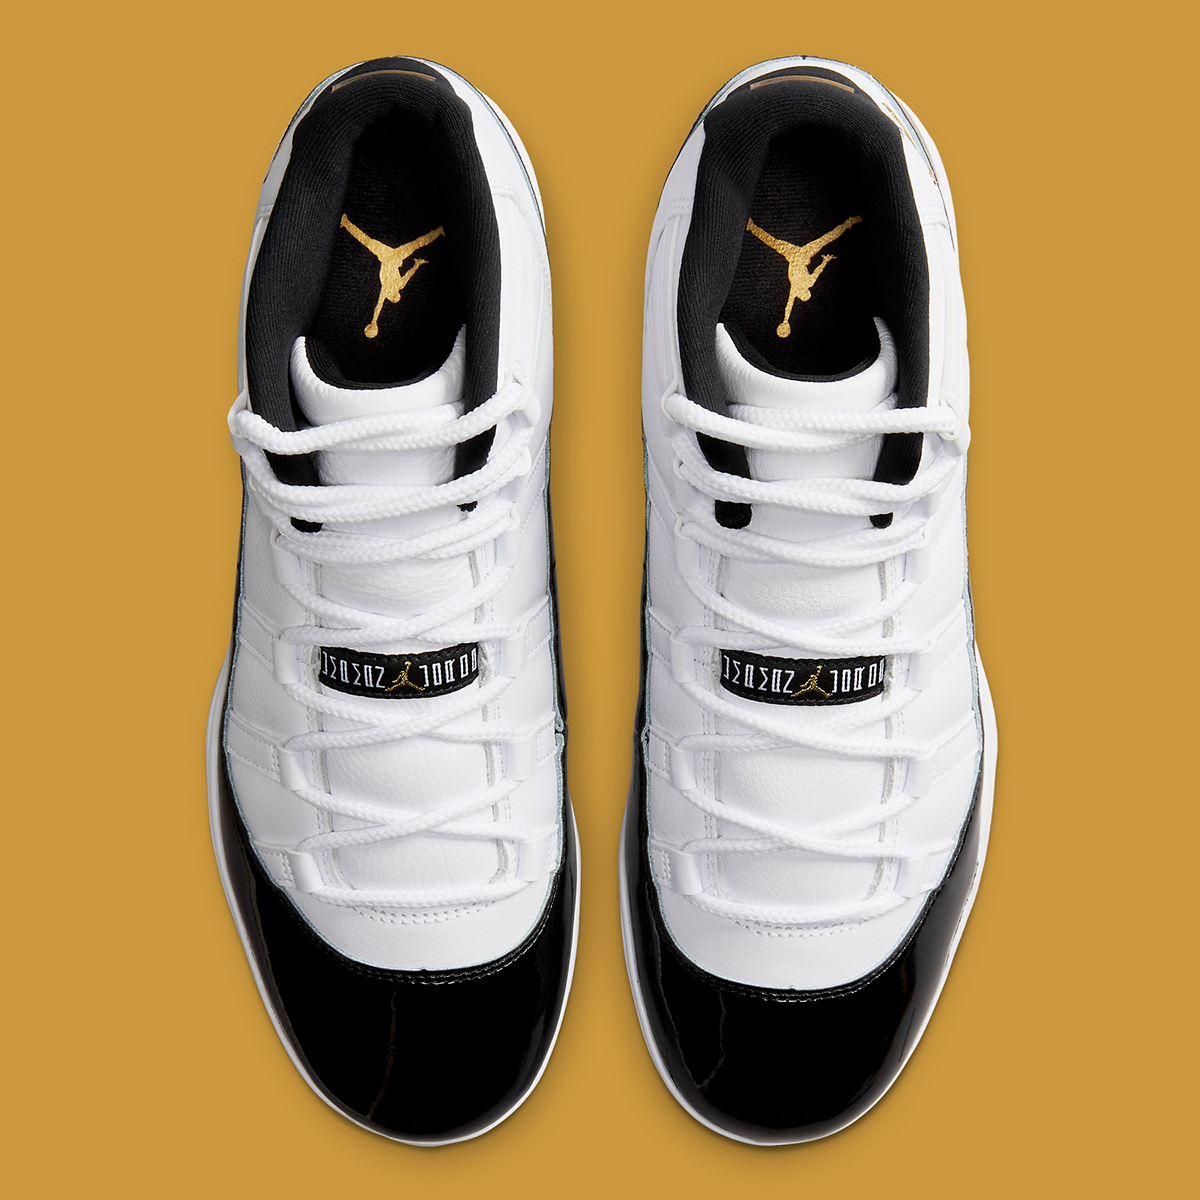 Nike Air Jordan Spizike 1 Low SE Tie Dye UK 10 Cleats Fv5374 107 3